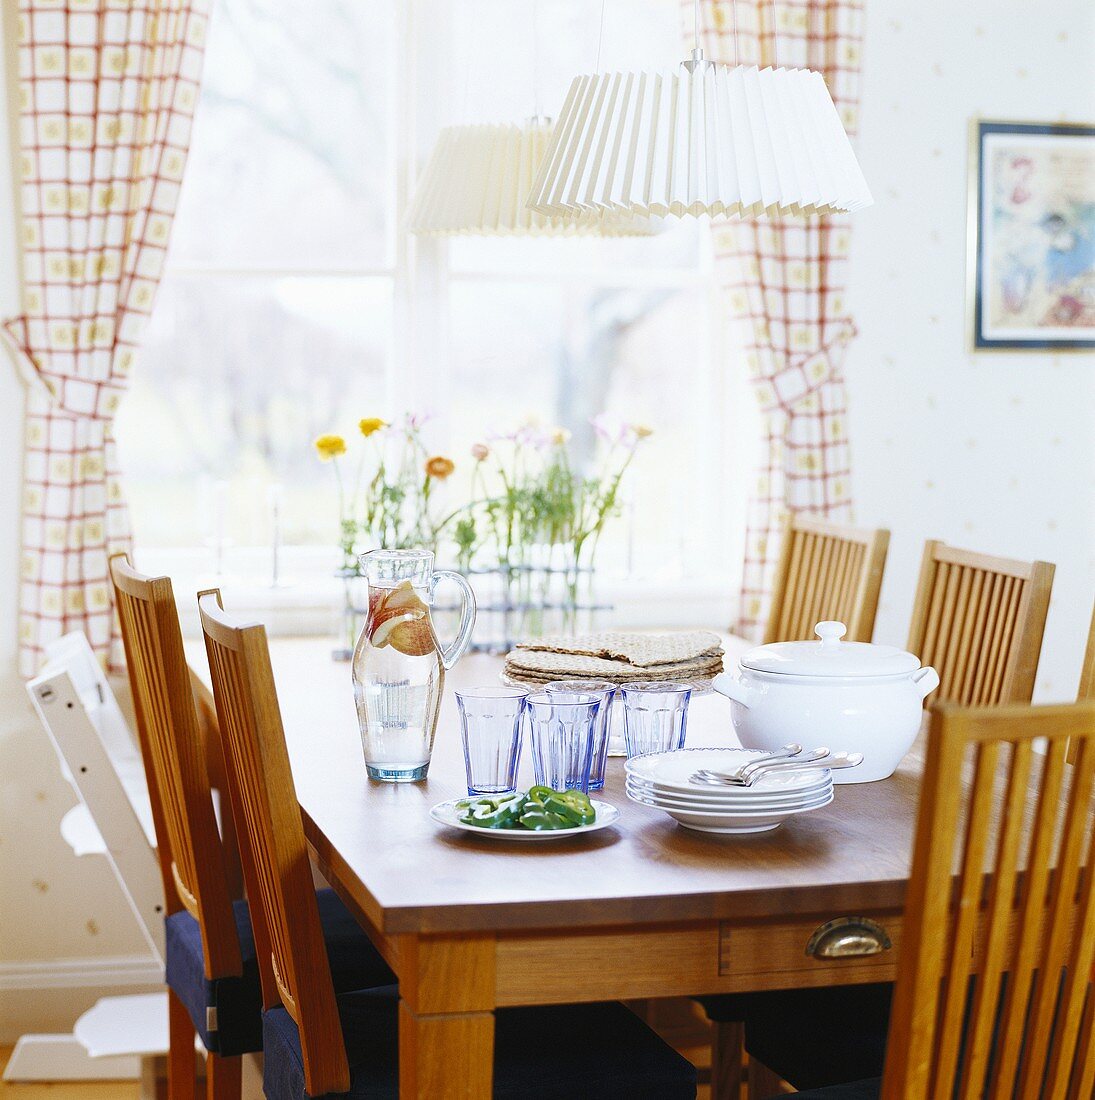 Esstisch mit Tellern und Gläsern am Fenster